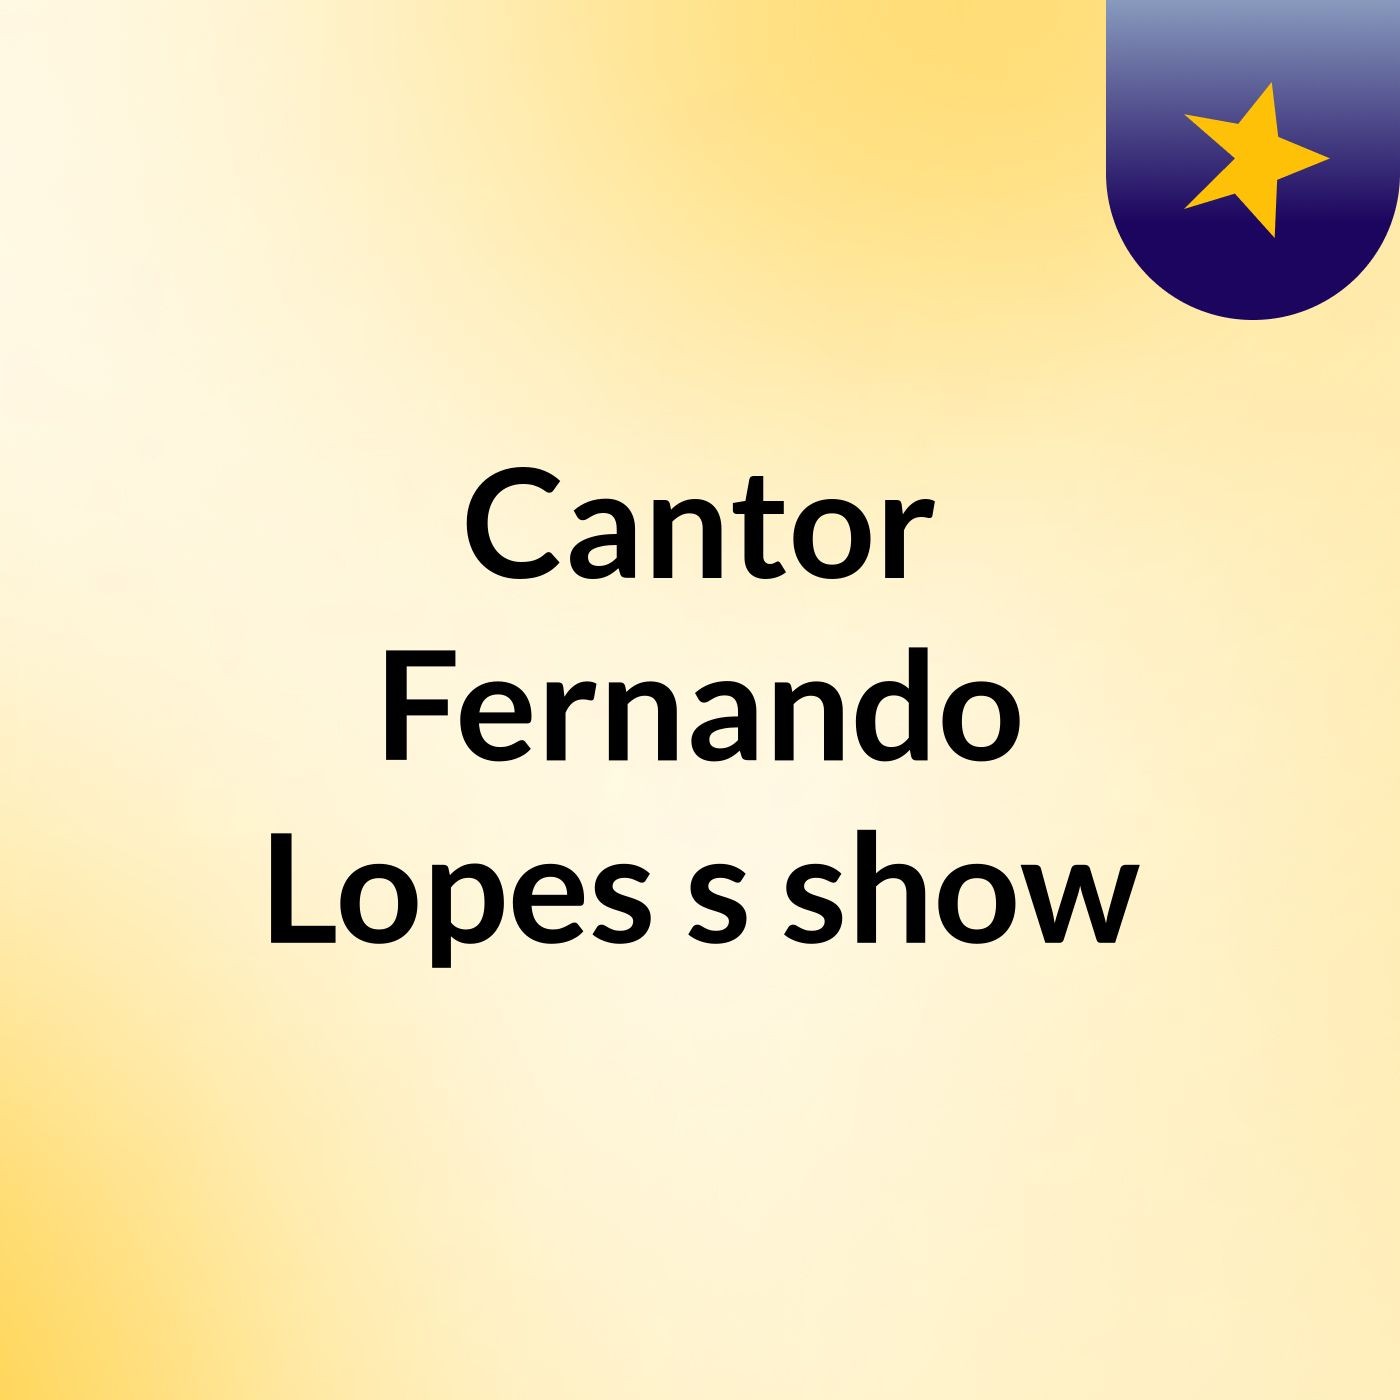 Satisfação Em Deus - Cantor Fernando Lopes's show